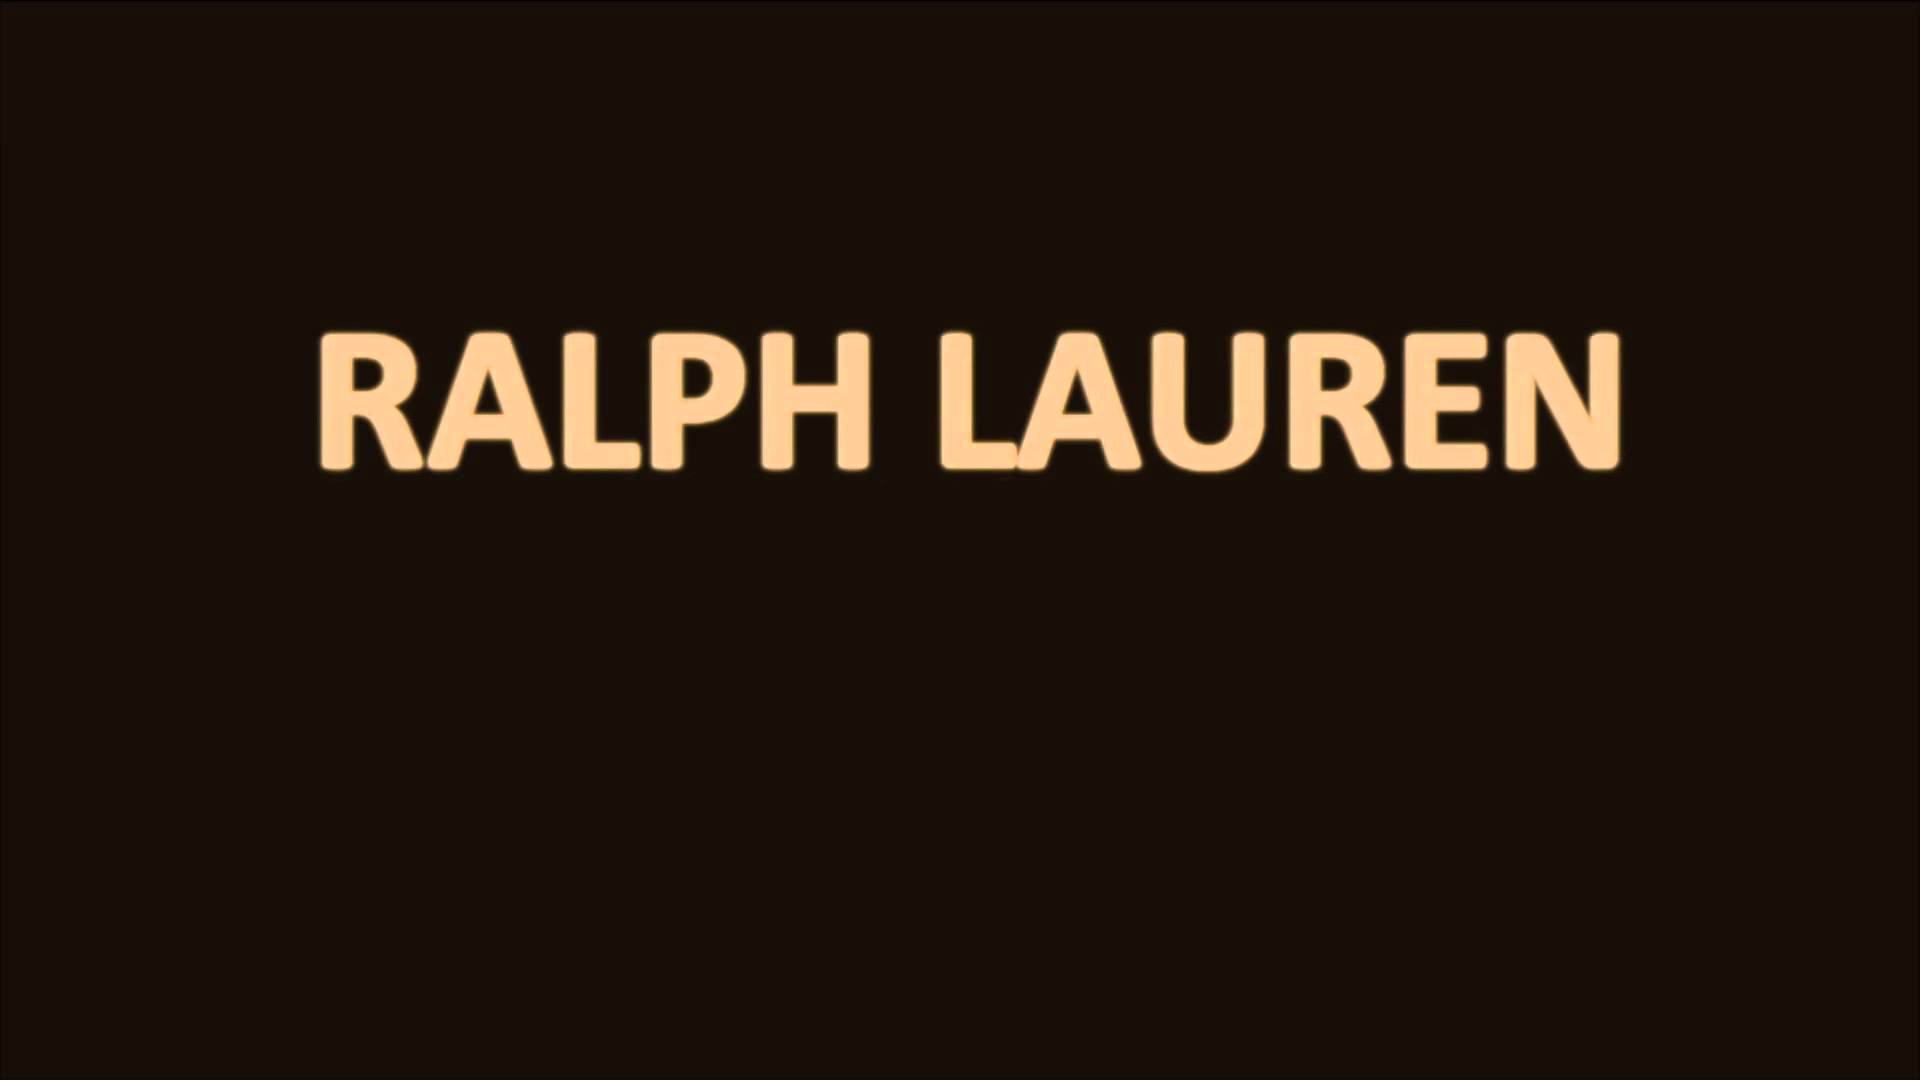 How to pronounce Ralph Lauren